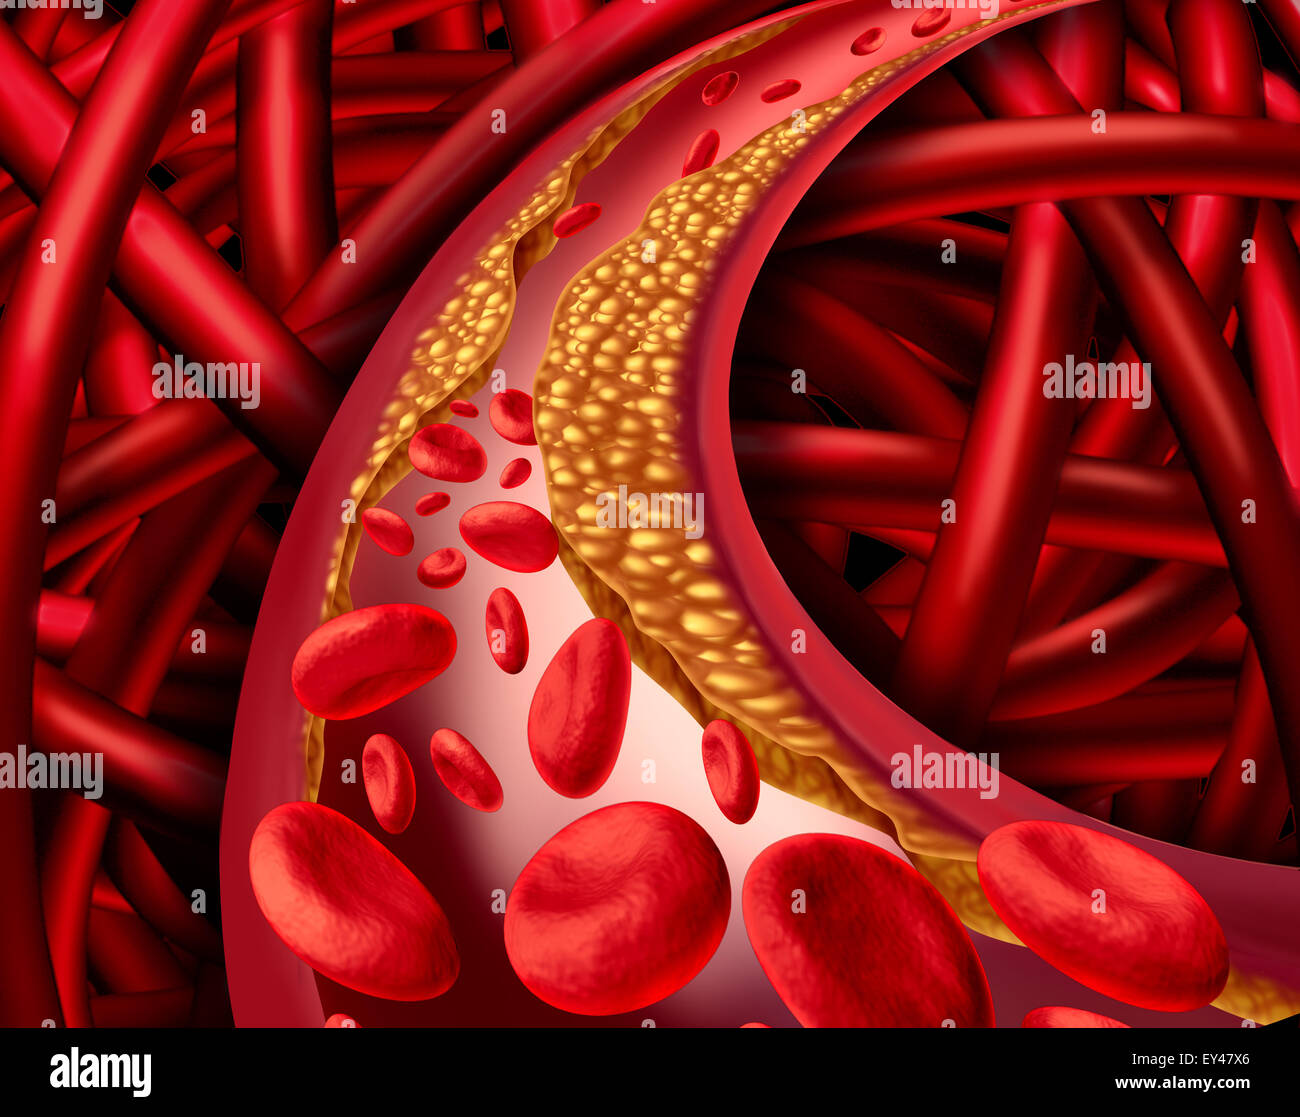 Arterie Problem mit verstopften Arterien und Atherosklerose medizinische Krankheitskonzept mit drei dimensionale menschliche Herz-Kreislauf-System mit Blut Zellen, die als Symbol für Gefäßerkrankungen durch Plaque-Bildung von Cholesterin blockiert. Stockfoto